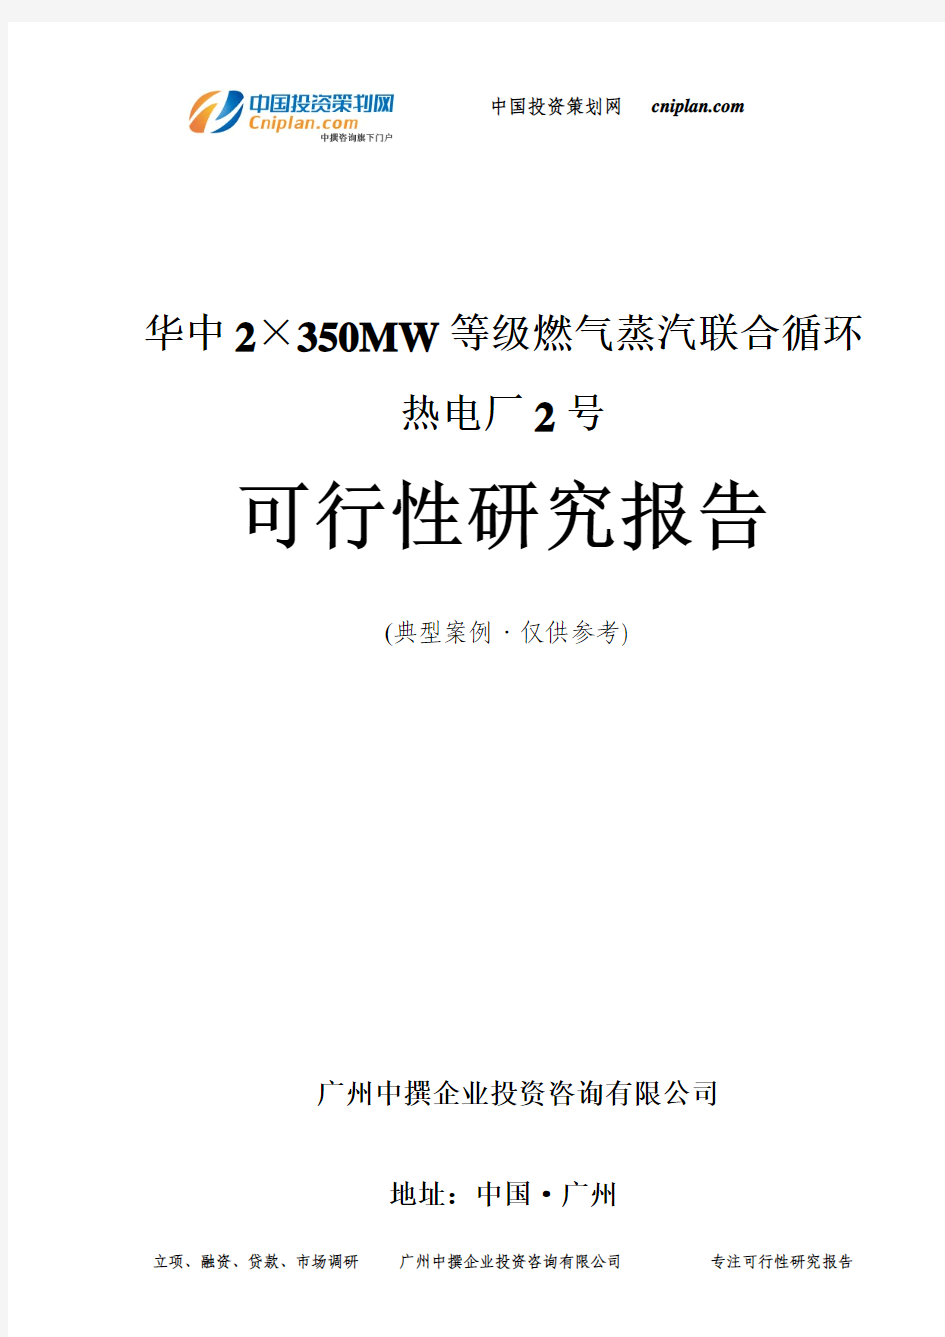 华中2×350MW等级燃气蒸汽联合循环热电厂2号可行性研究报告-广州中撰咨询